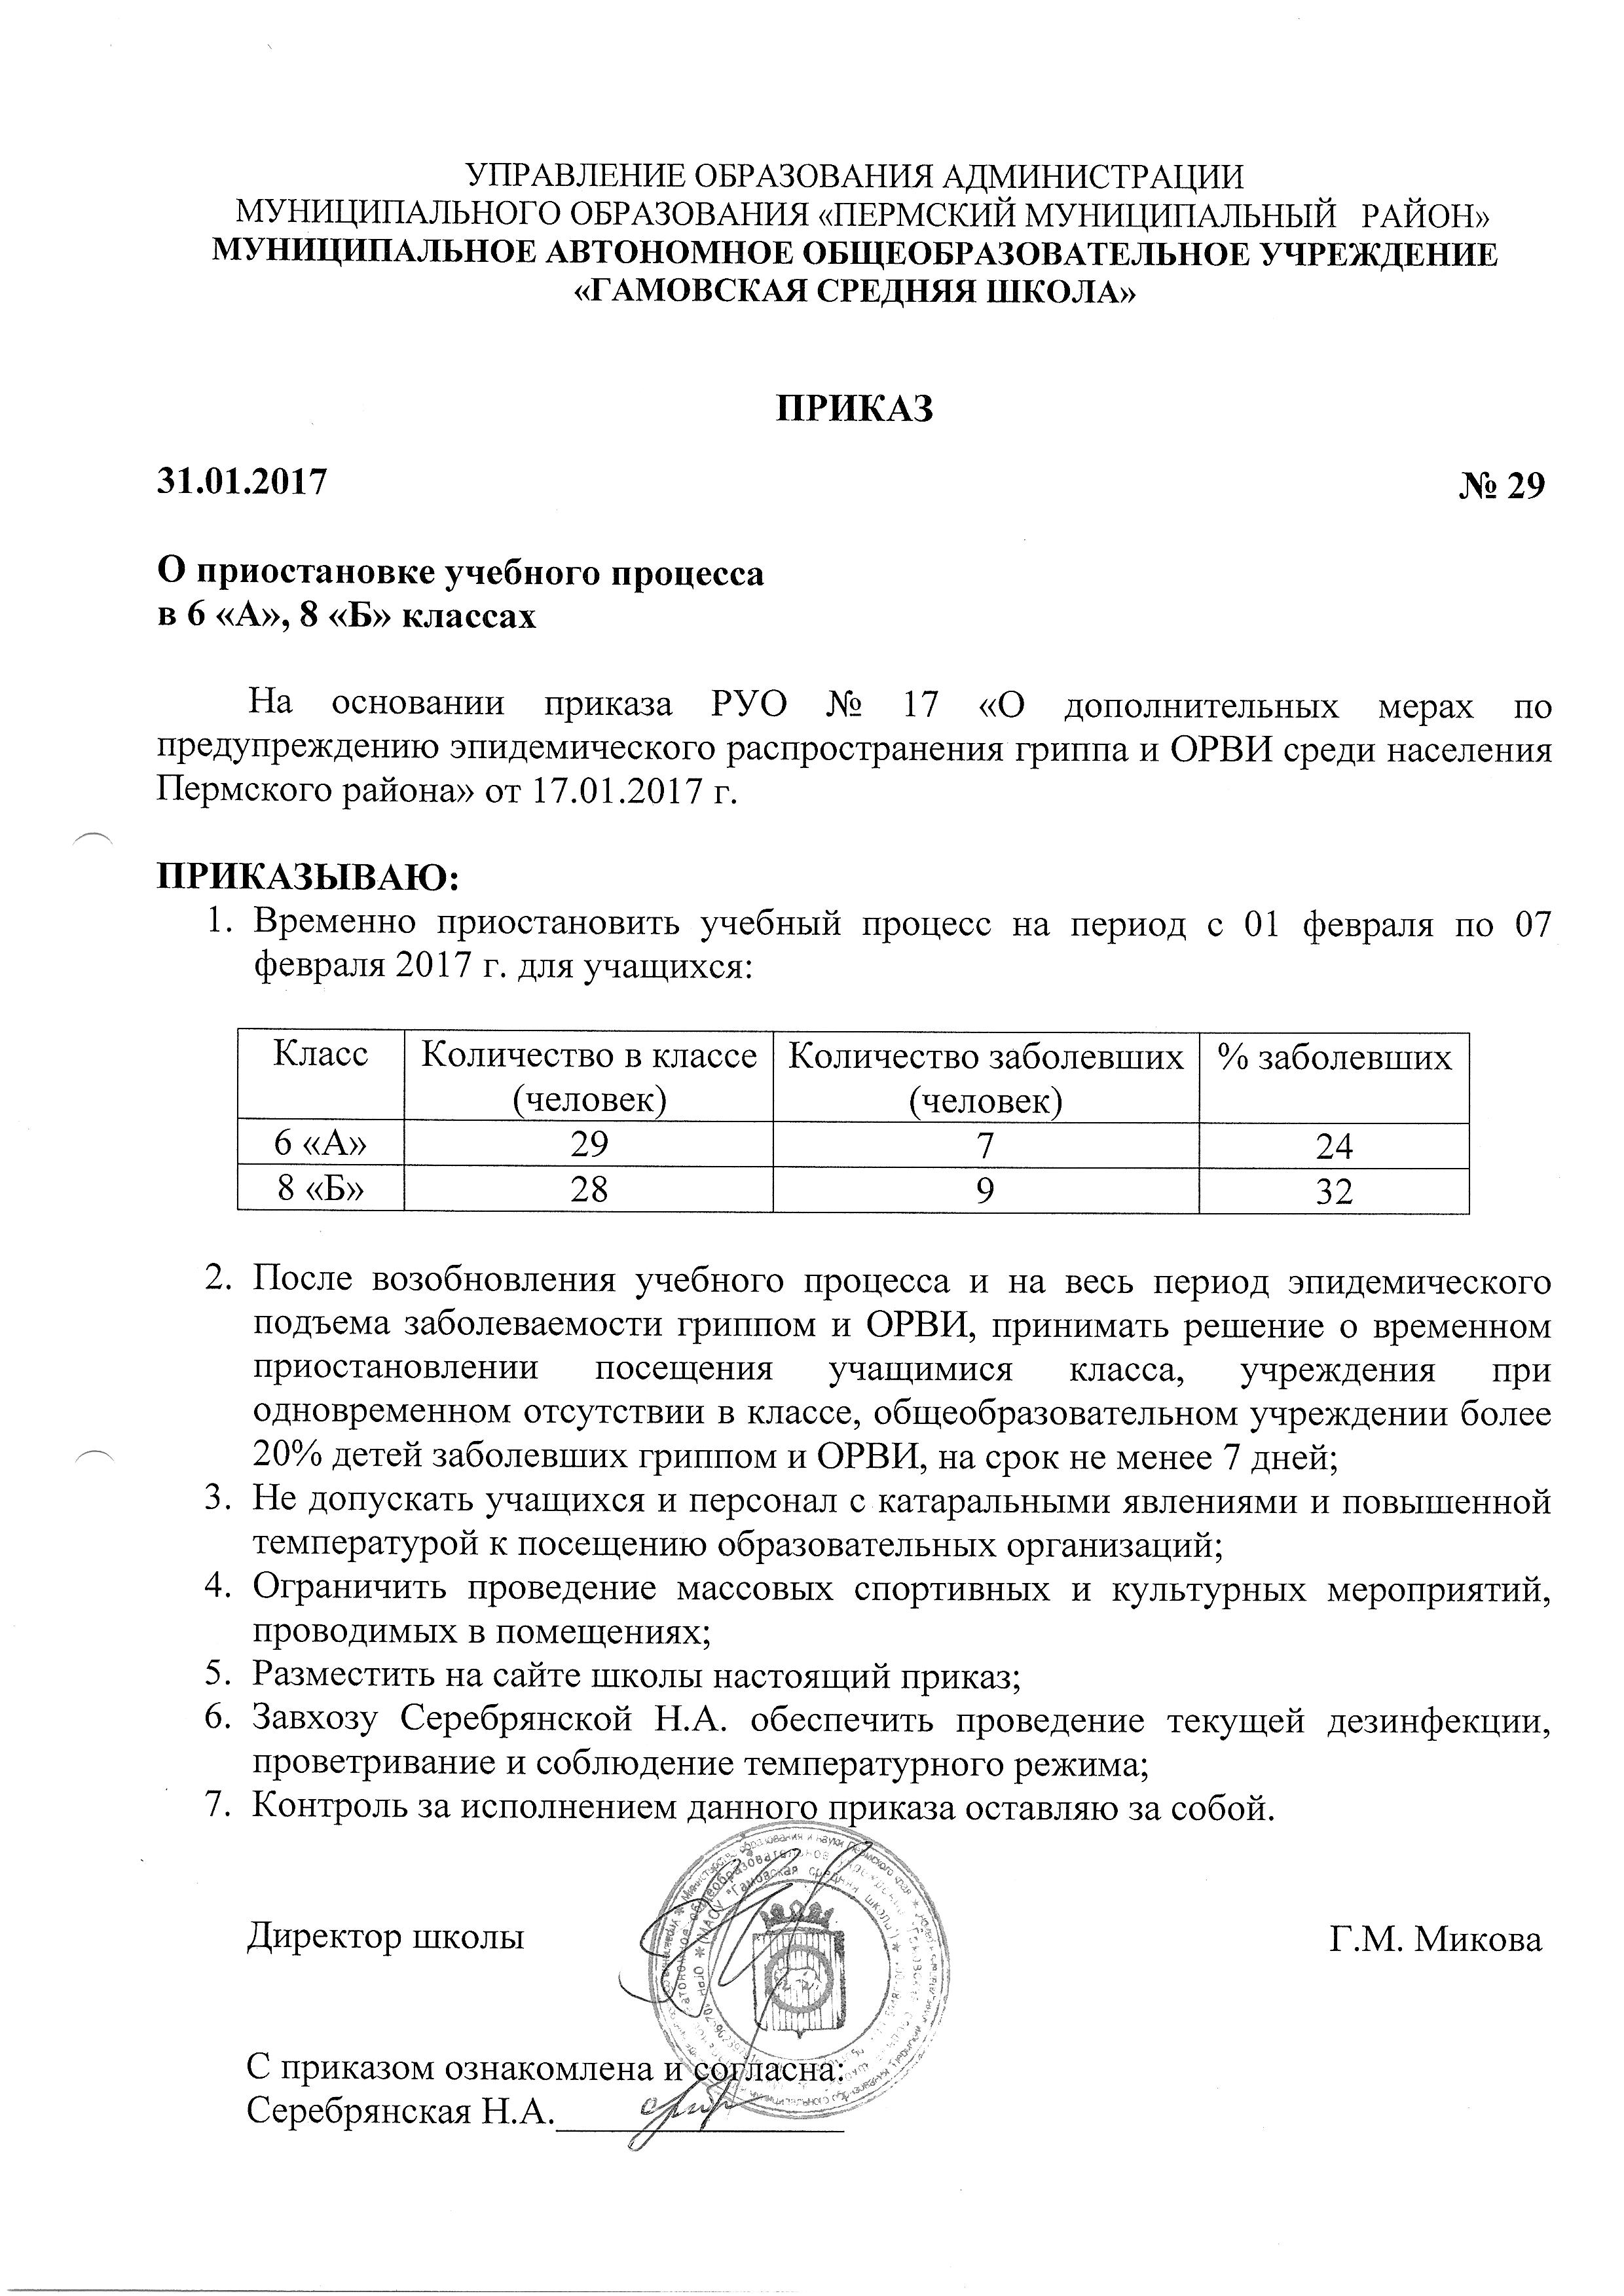 Приказ № 29 О приостановке учебного процесса в школе от 31.01.2017